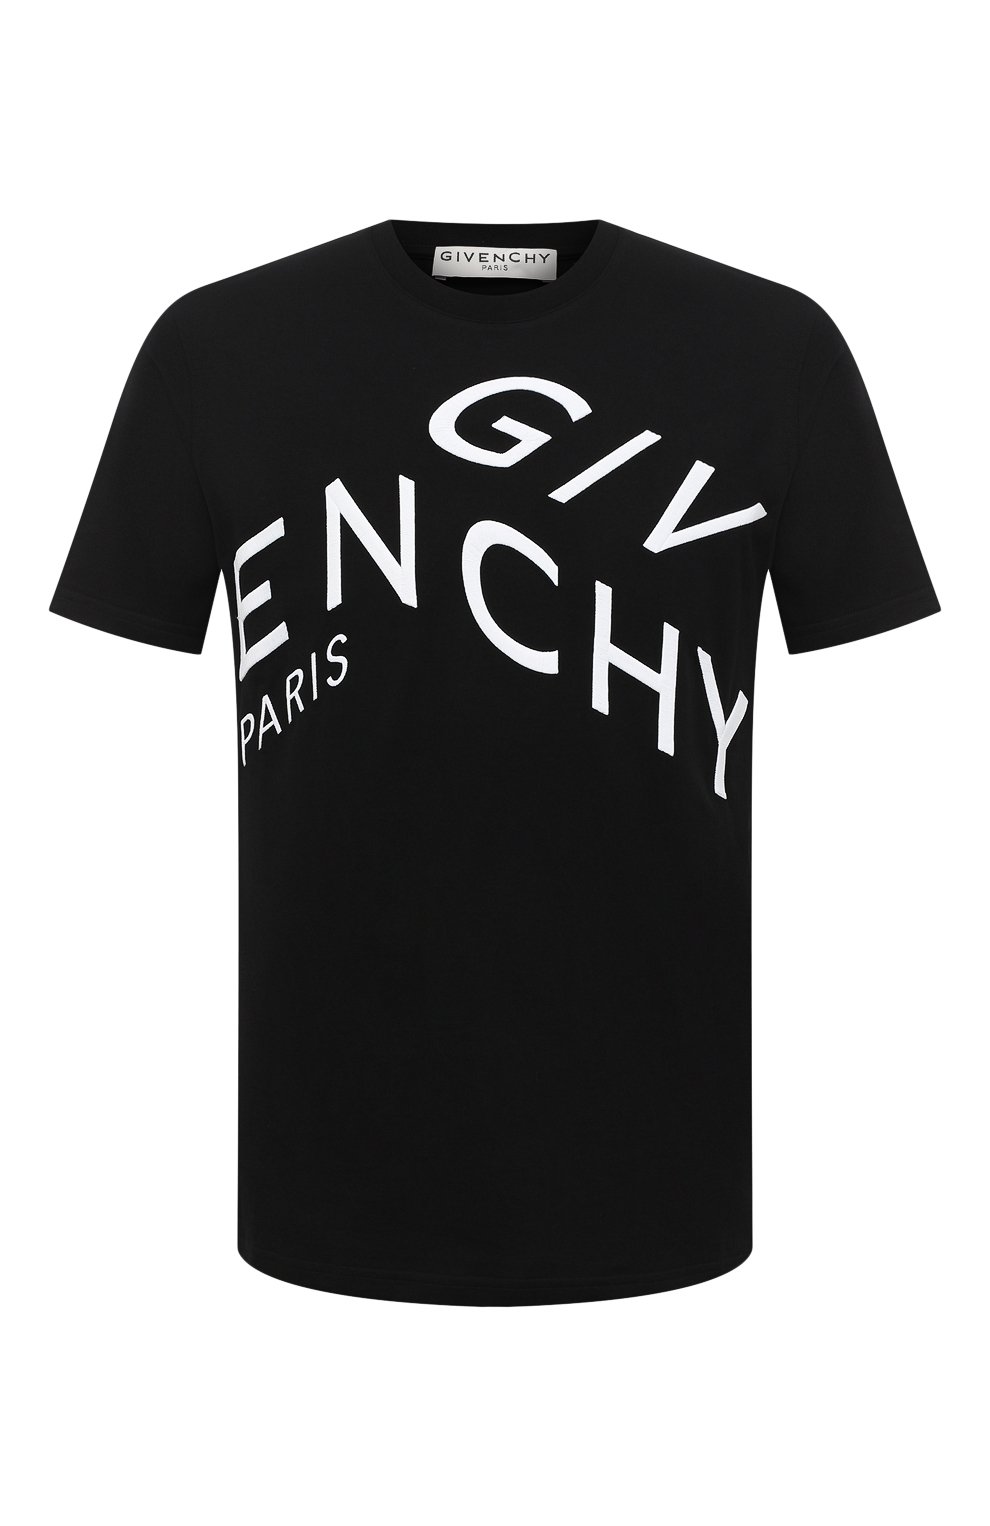 Футболки Givenchy, Хлопковая футболка Givenchy, Португалия, Чёрный, Хлопок: 100%;, 11326236  - купить